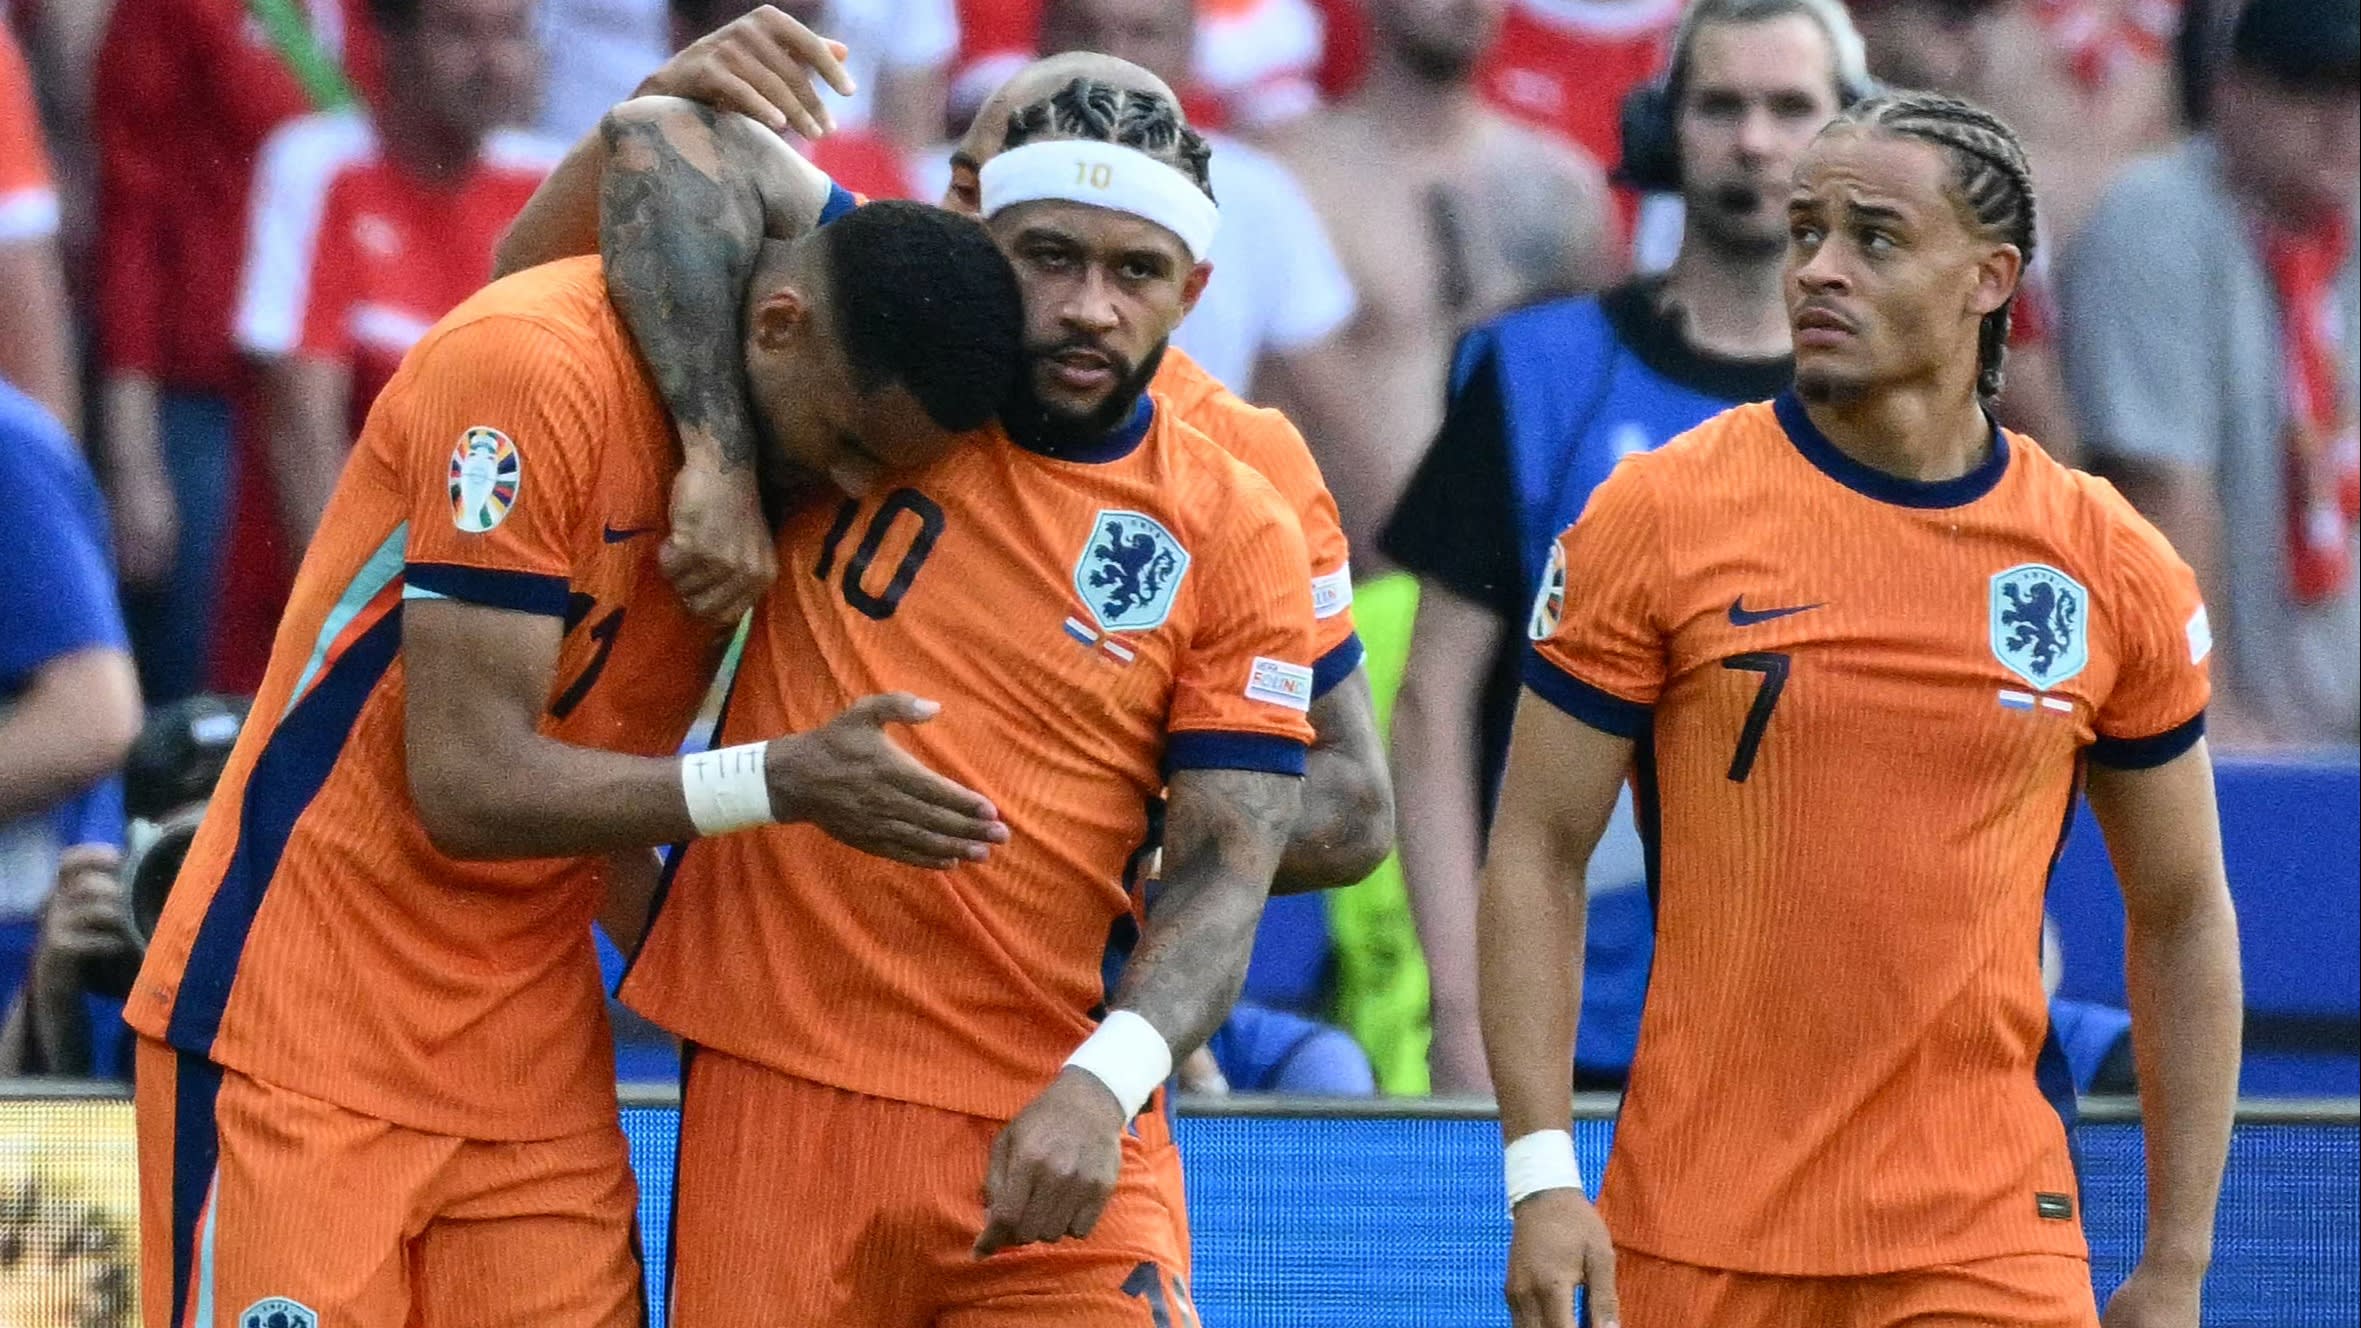 Oranje met 3-2 ten onder tegen Oostenrijk, wacht zware tegenstander in achtste finale